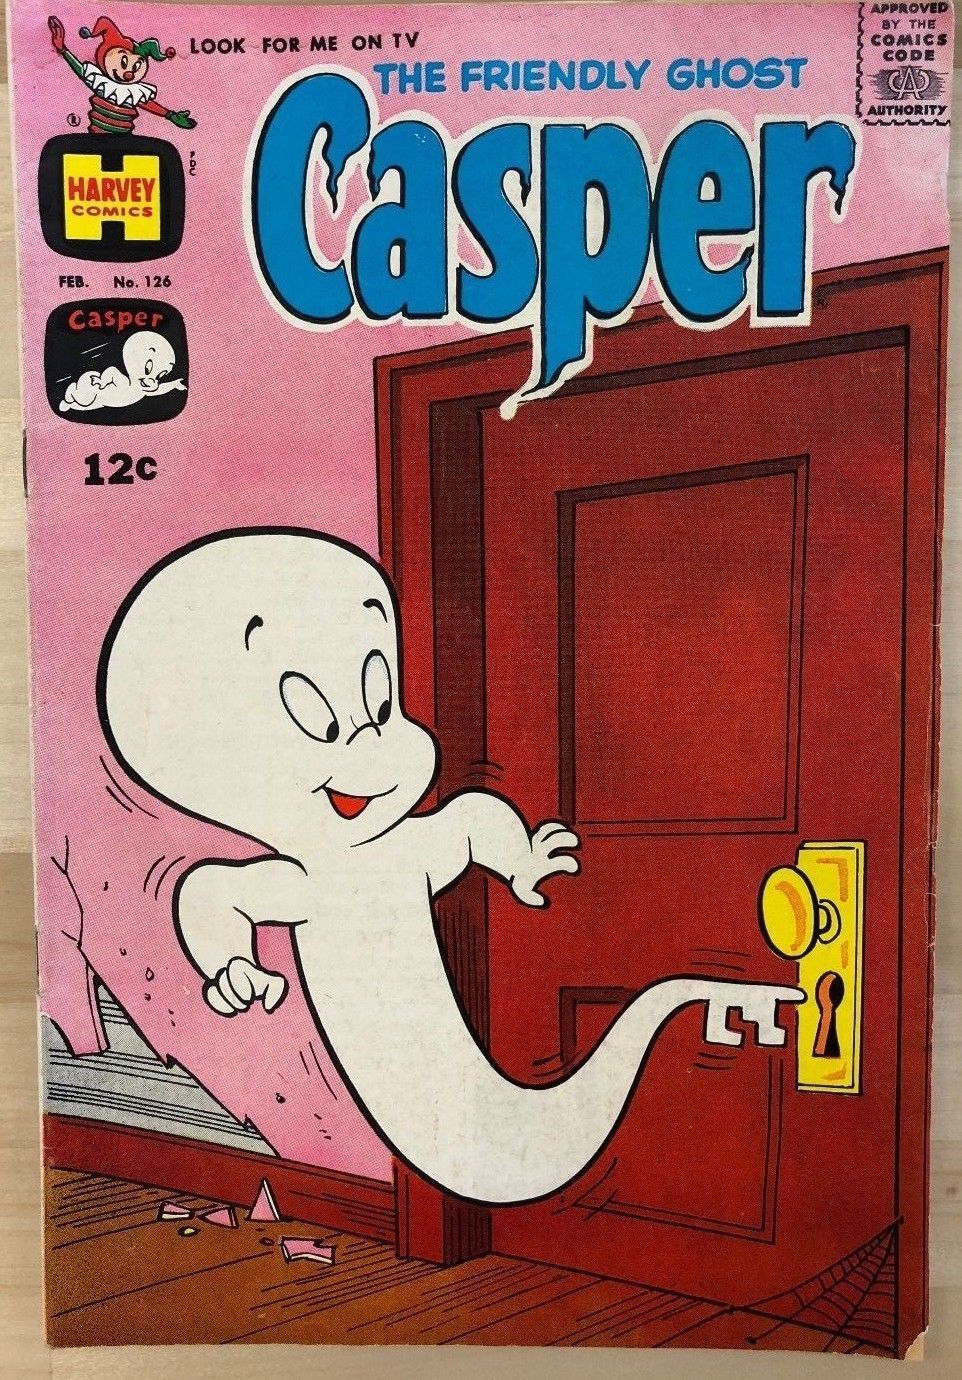 CASPER #126 (1969) Harvey Comics VG+ - Cartoon Character